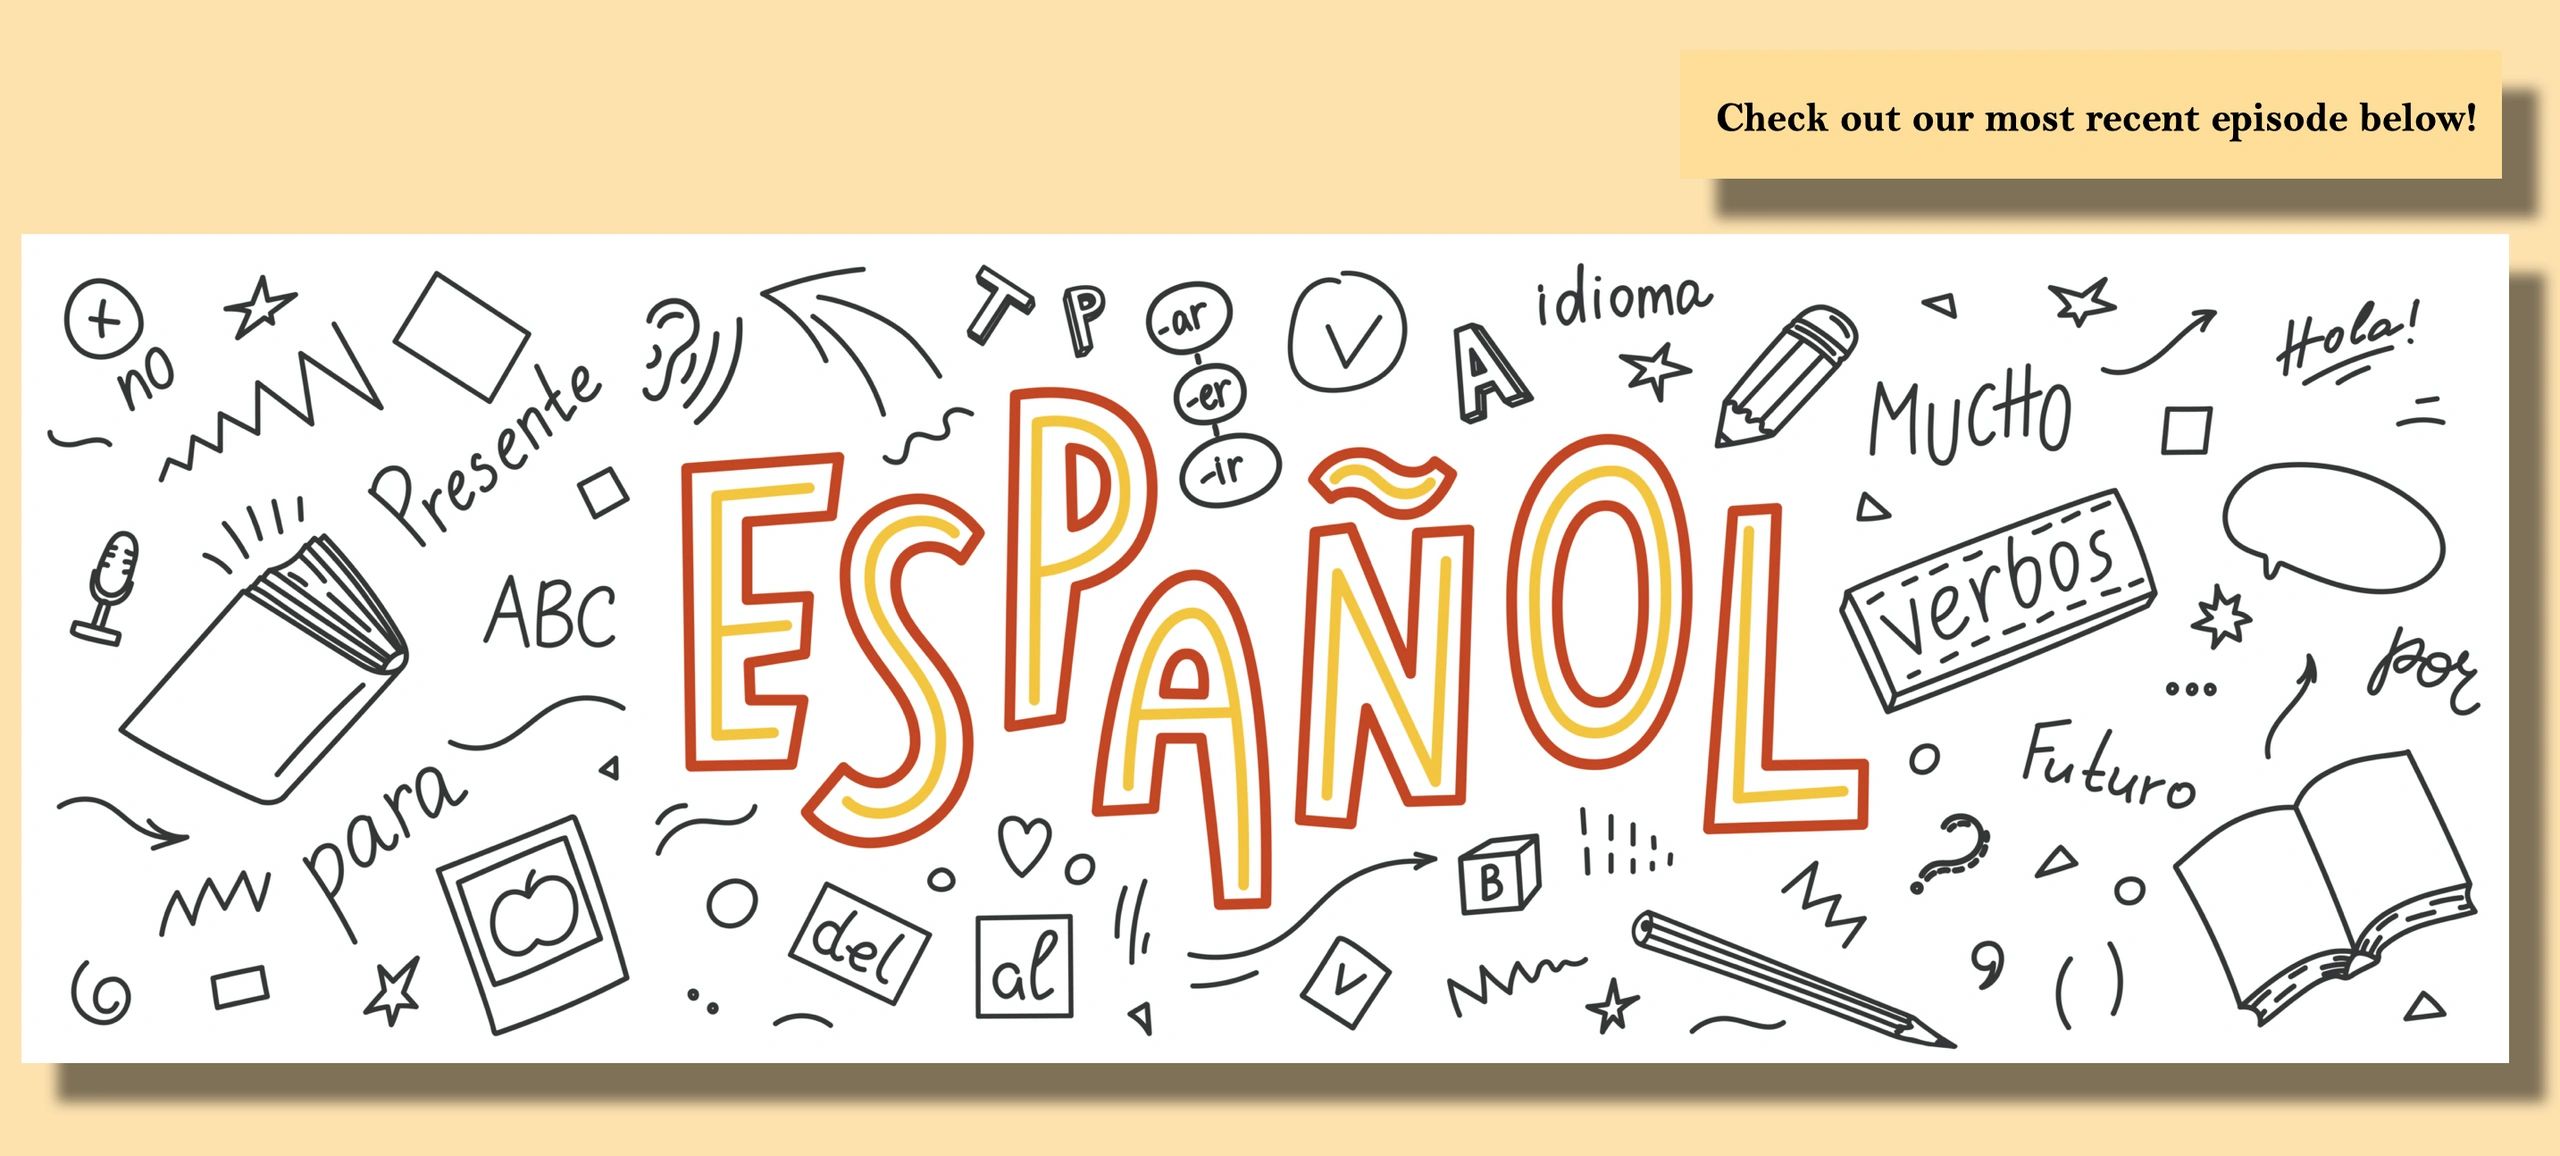 Spin язык. Espanol. Испанский язык чб. Надпись испанский язык. Испанский язык картинки для оформления текста.